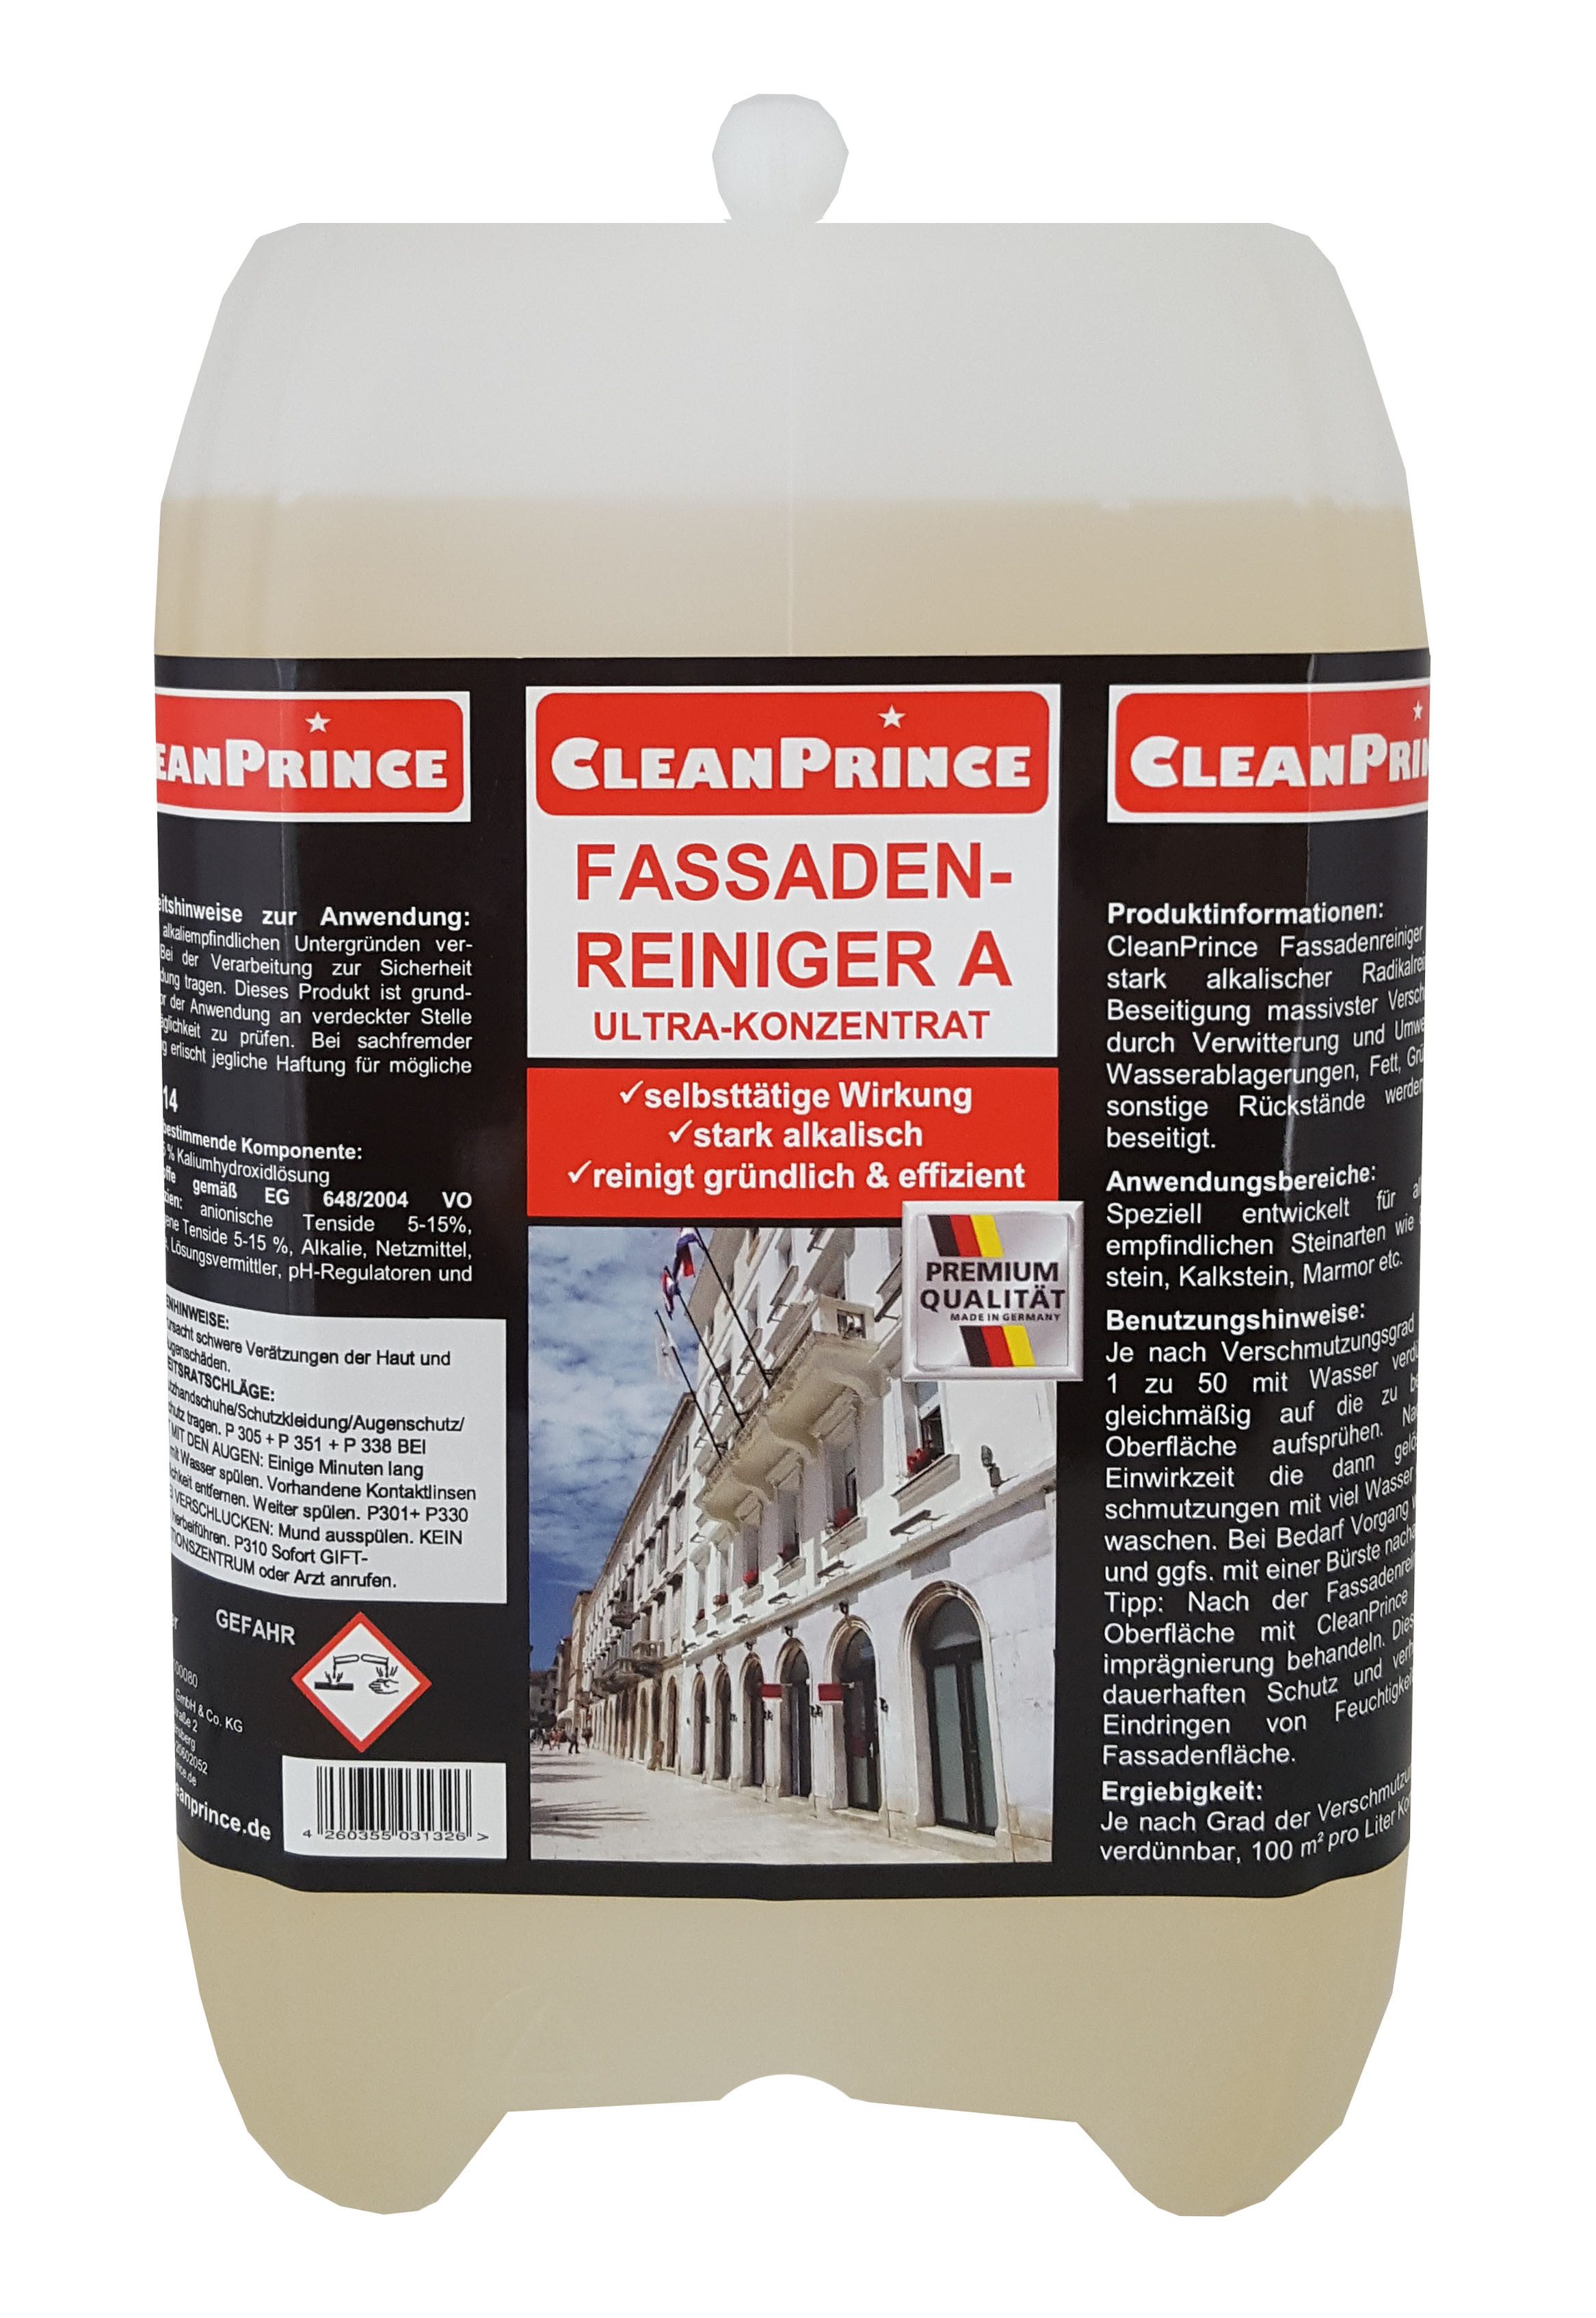 CleanPrince Fassadenreiniger A alkalisch, Putz, Beton, säureempfindliche Wände Reinigungskonzentrat (für säureempfindliche Fassaden)